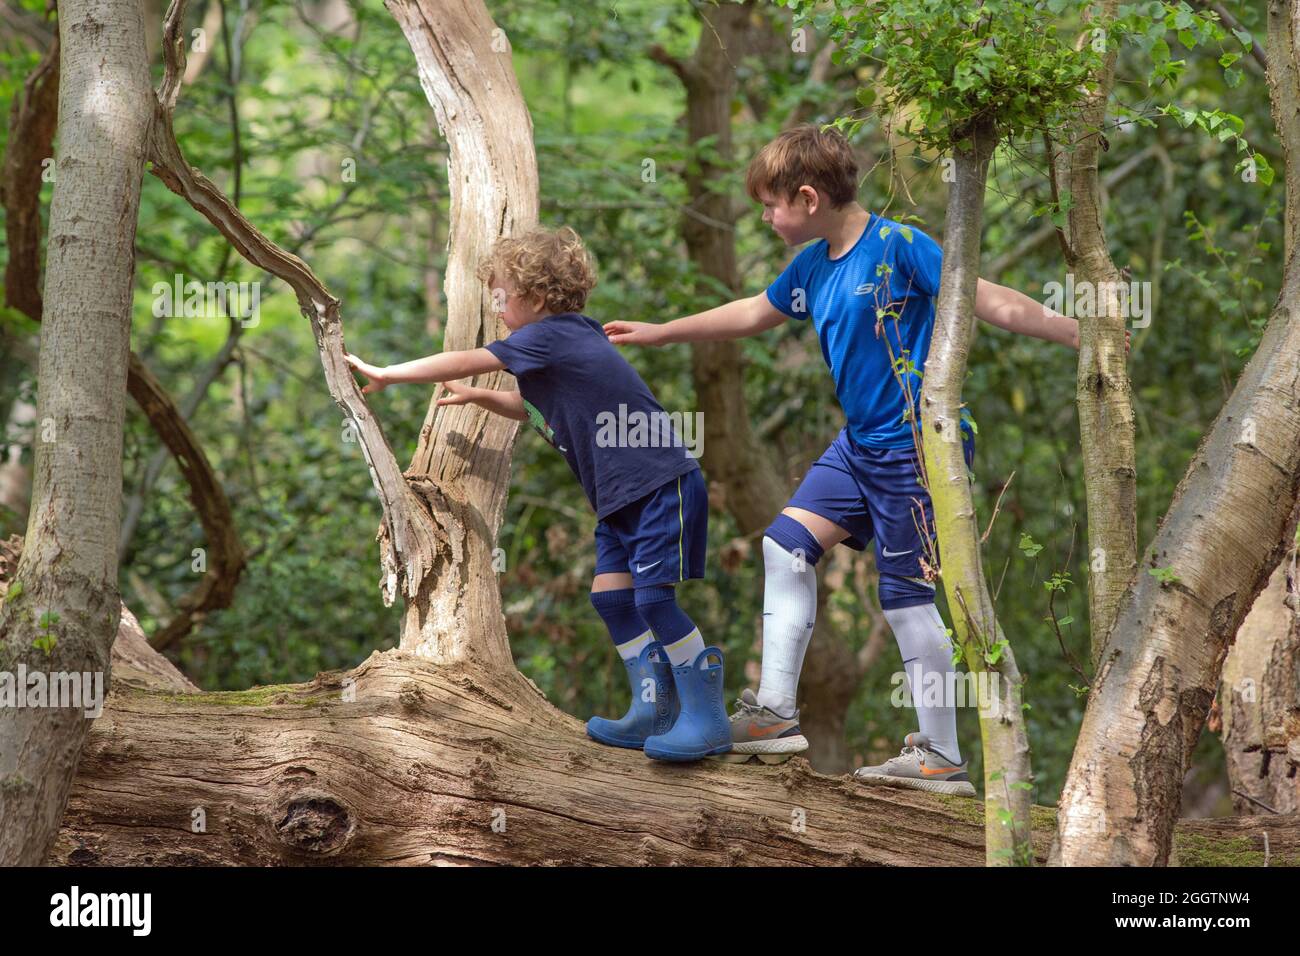 Zwei junge Jungen, Brüder, Geschwister, klettern, klammernden, Balanciert auf einem abgefallenen toten Baumstamm im Wald. Instinktive BrachiatPrimatenbewegung sein Stockfoto